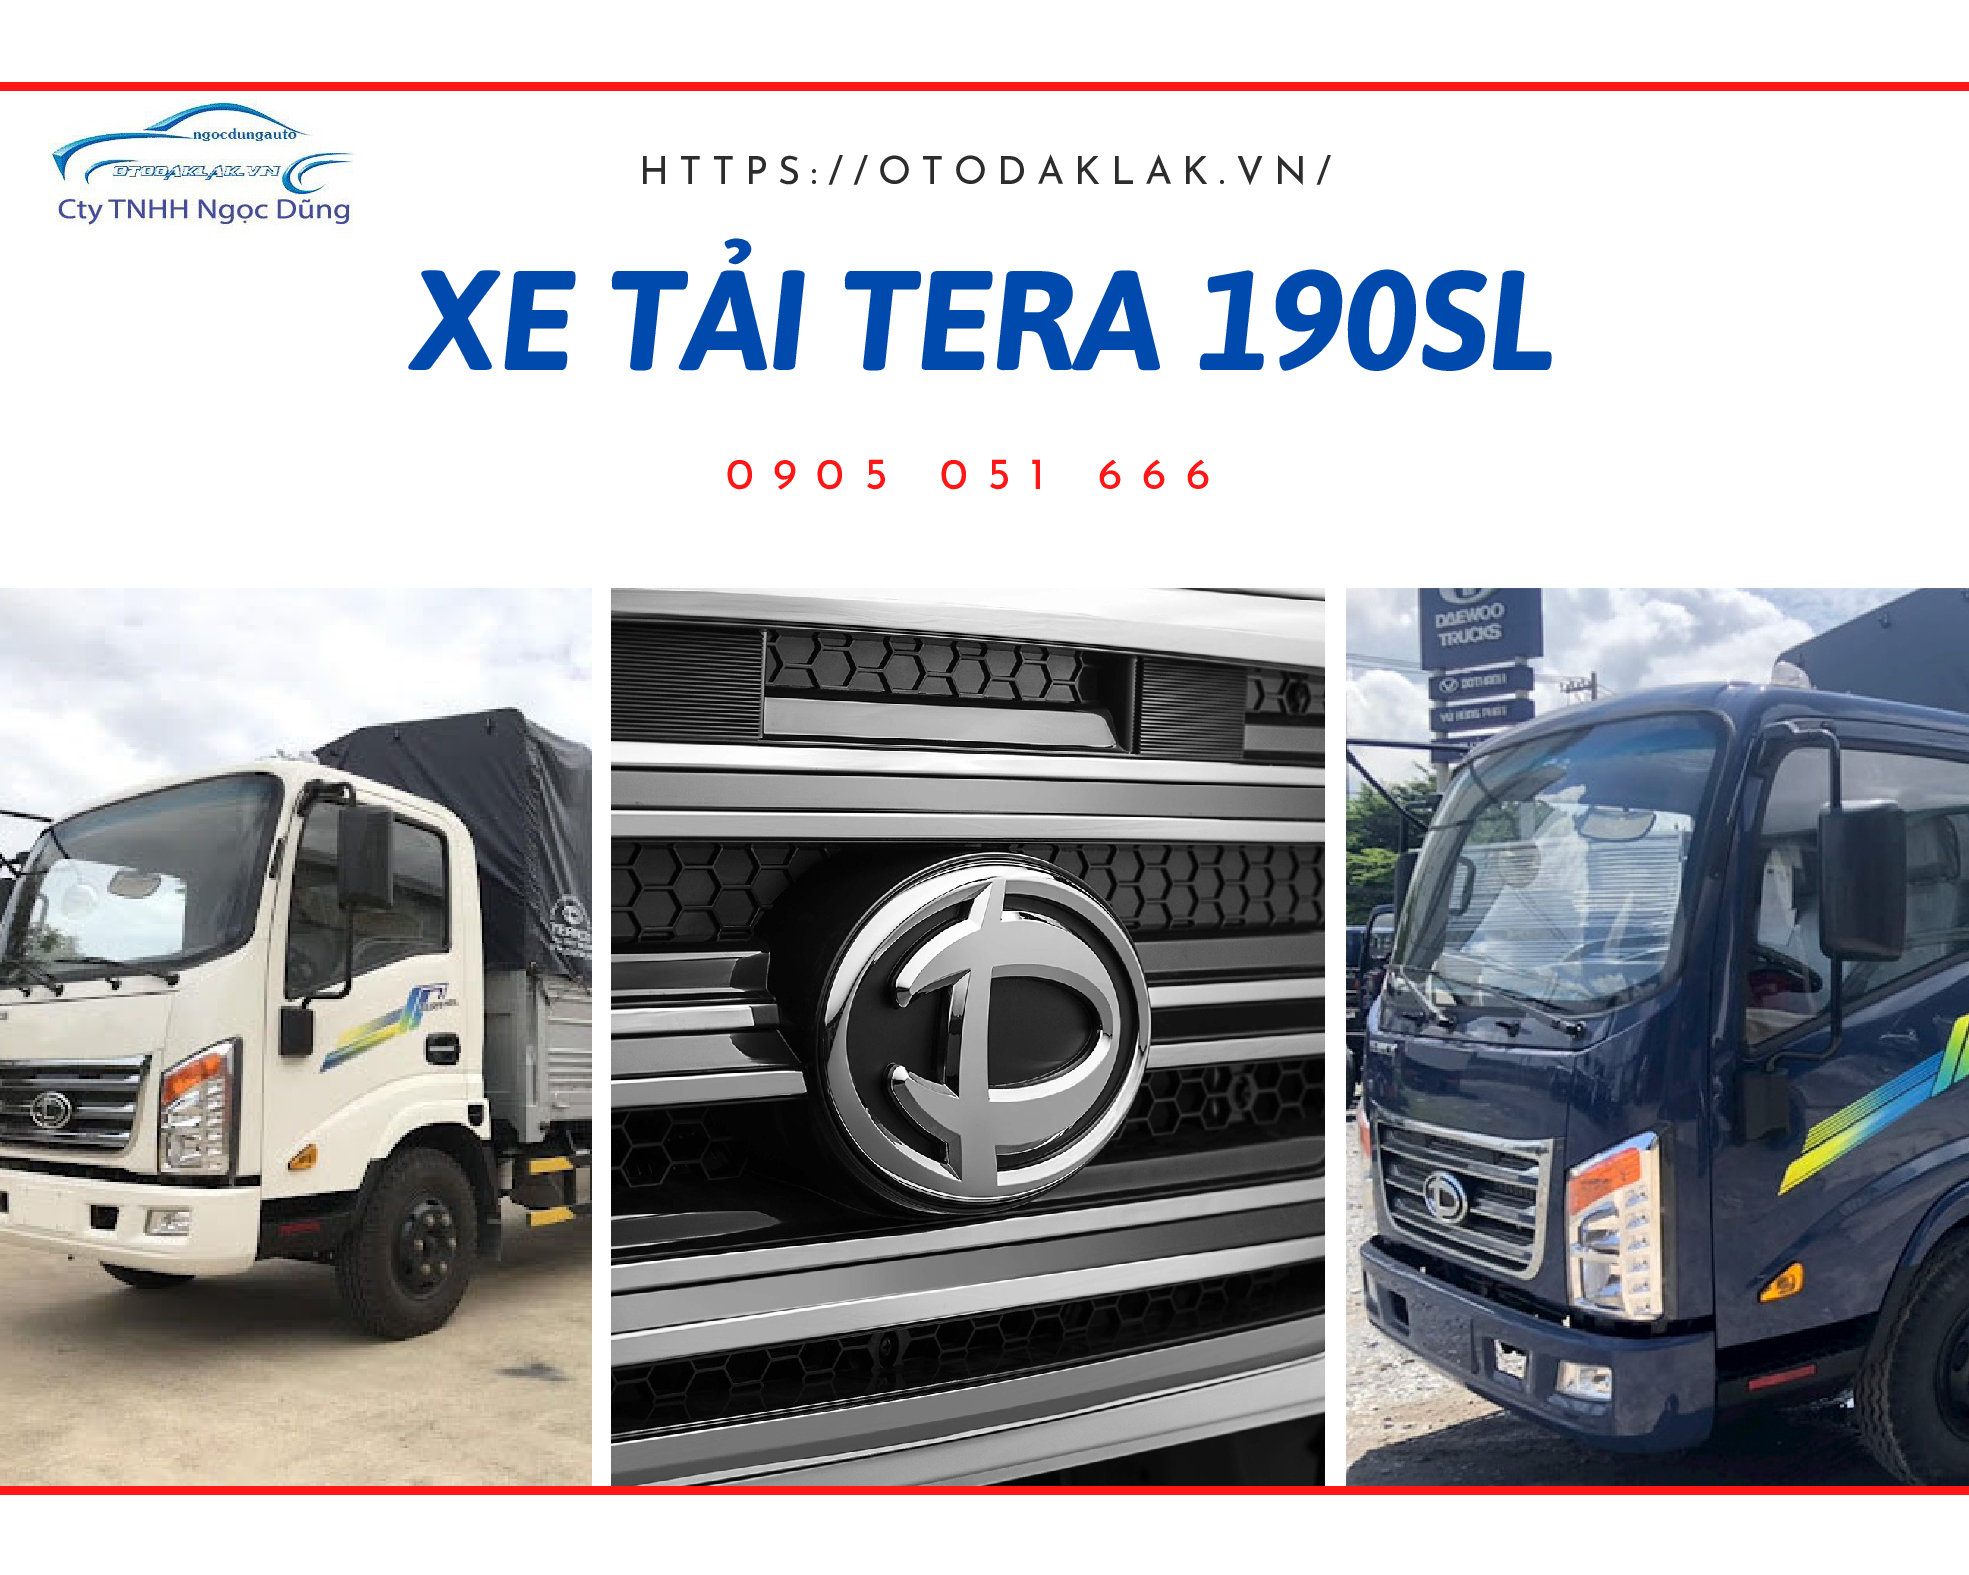 Xe tải Tera 190sl - Chuyên gia vận chuyển sản phẩm có kích thước dài